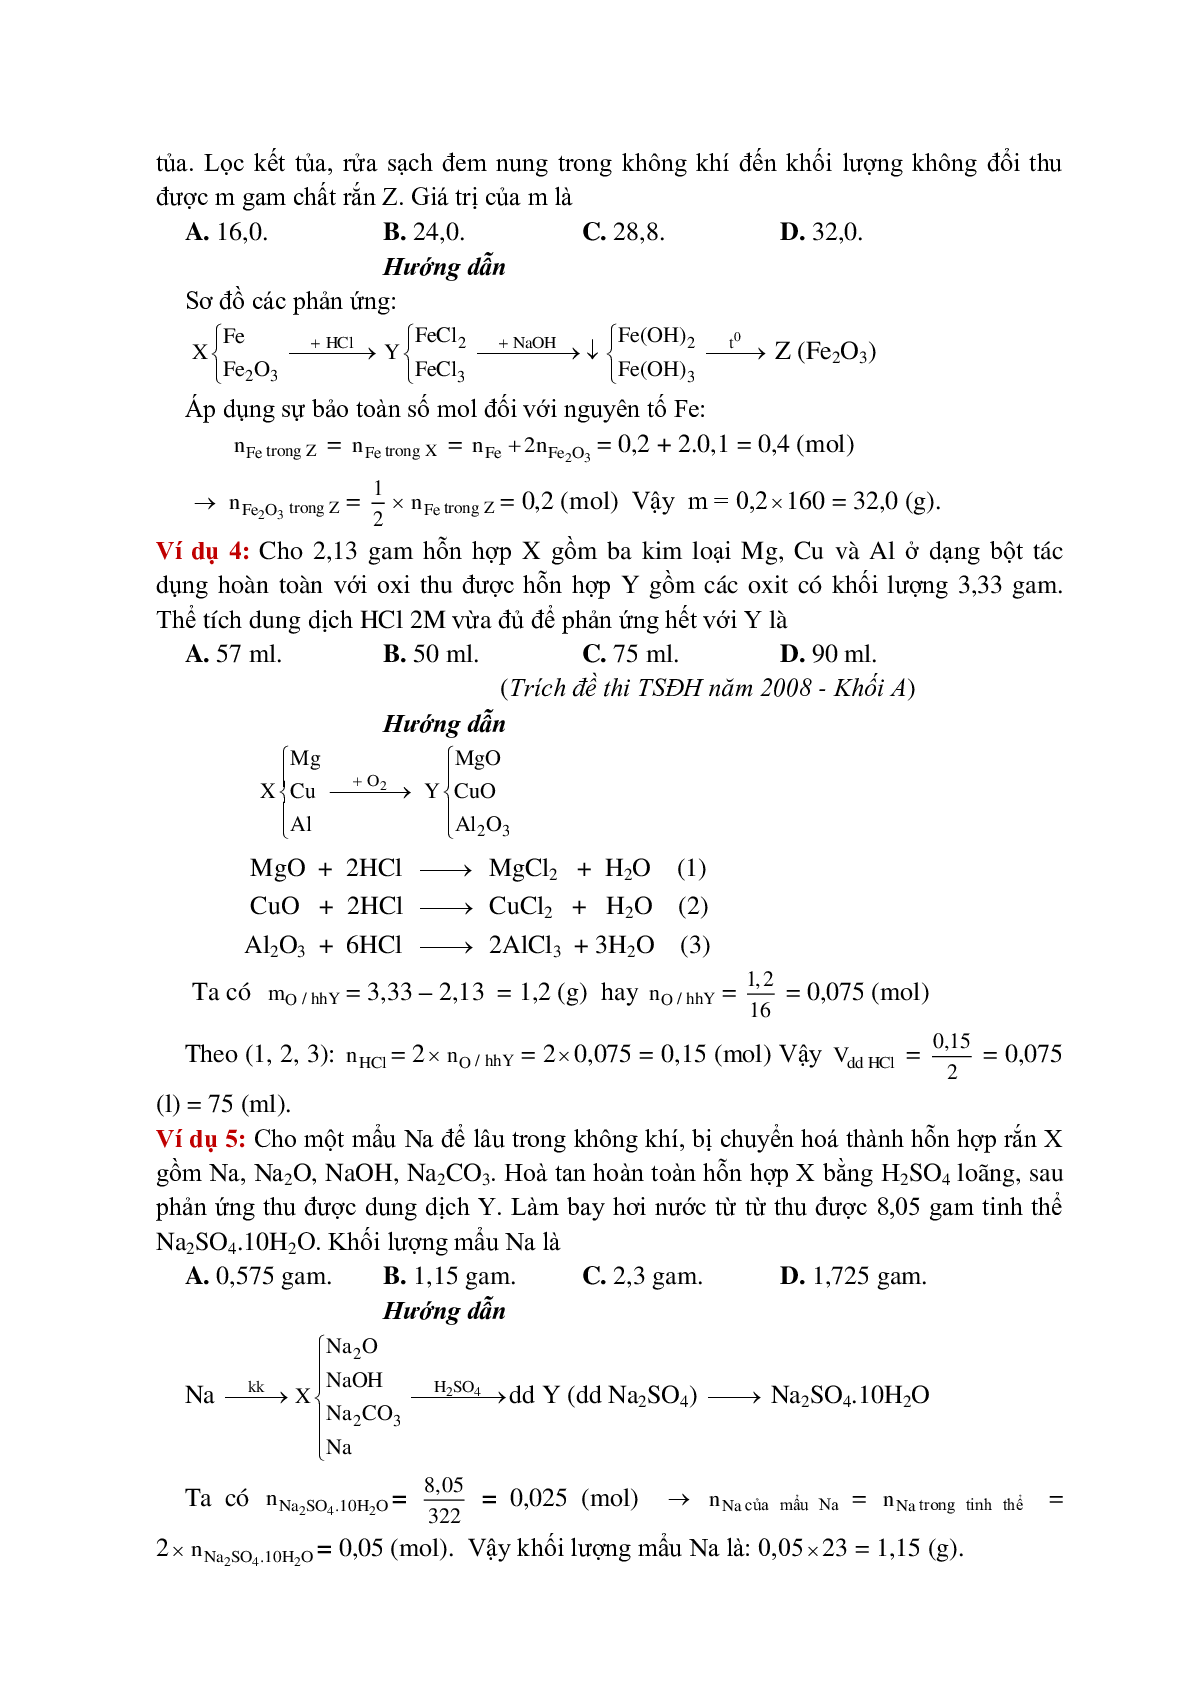 Lý thuyết, bài tập về Phương pháp bảo toàn khối lượng có đáp án (trang 6)